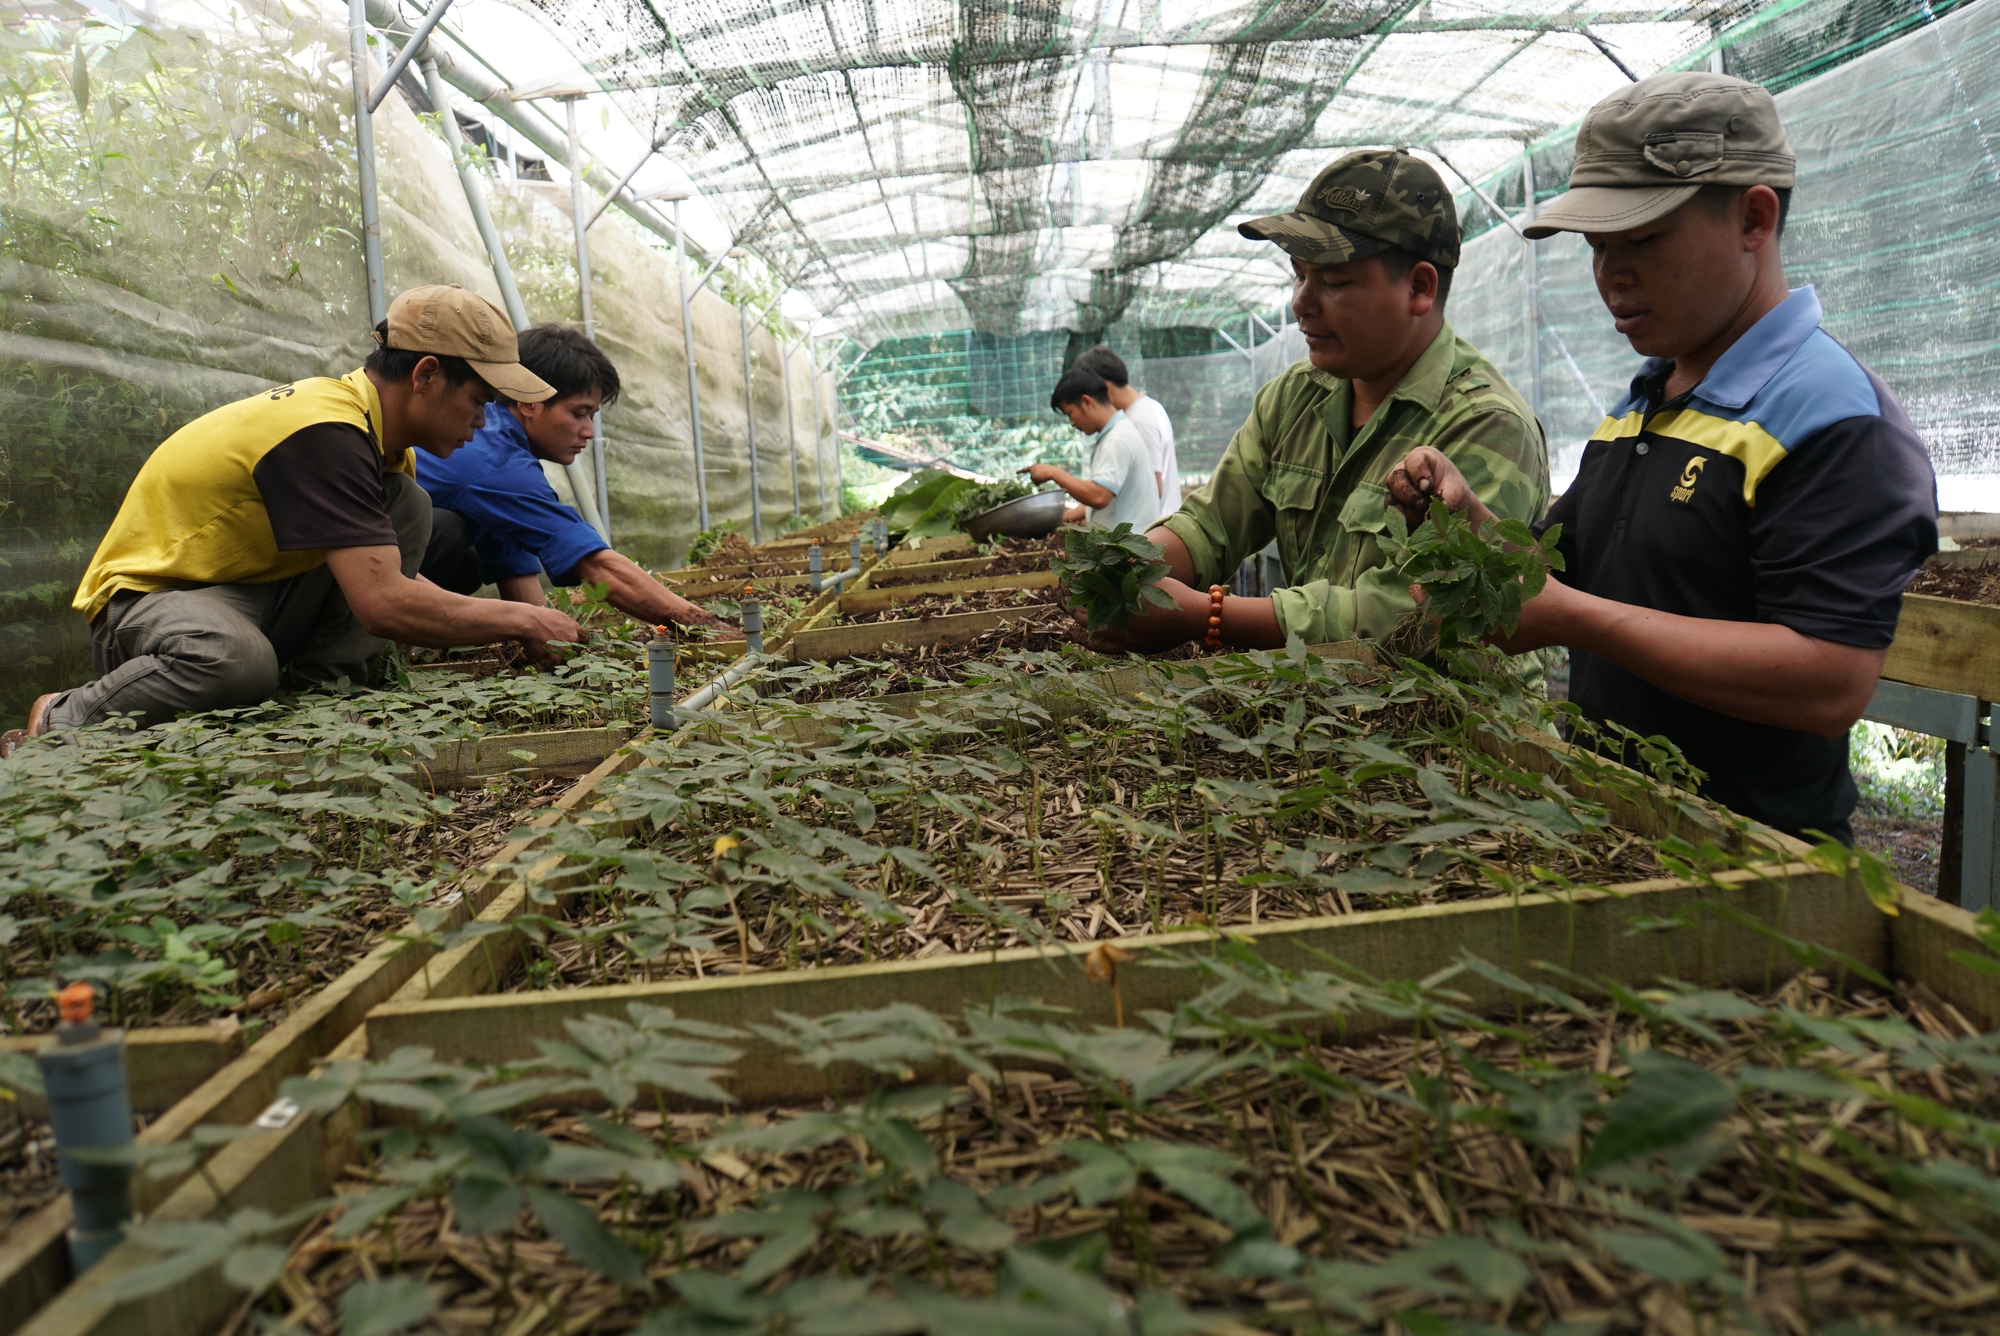  Quảng Nam thống nhất chấm dứt hoạt động dự án đầu tư nhà máy chế biến sâm và cây dược liệu  - Ảnh 2.